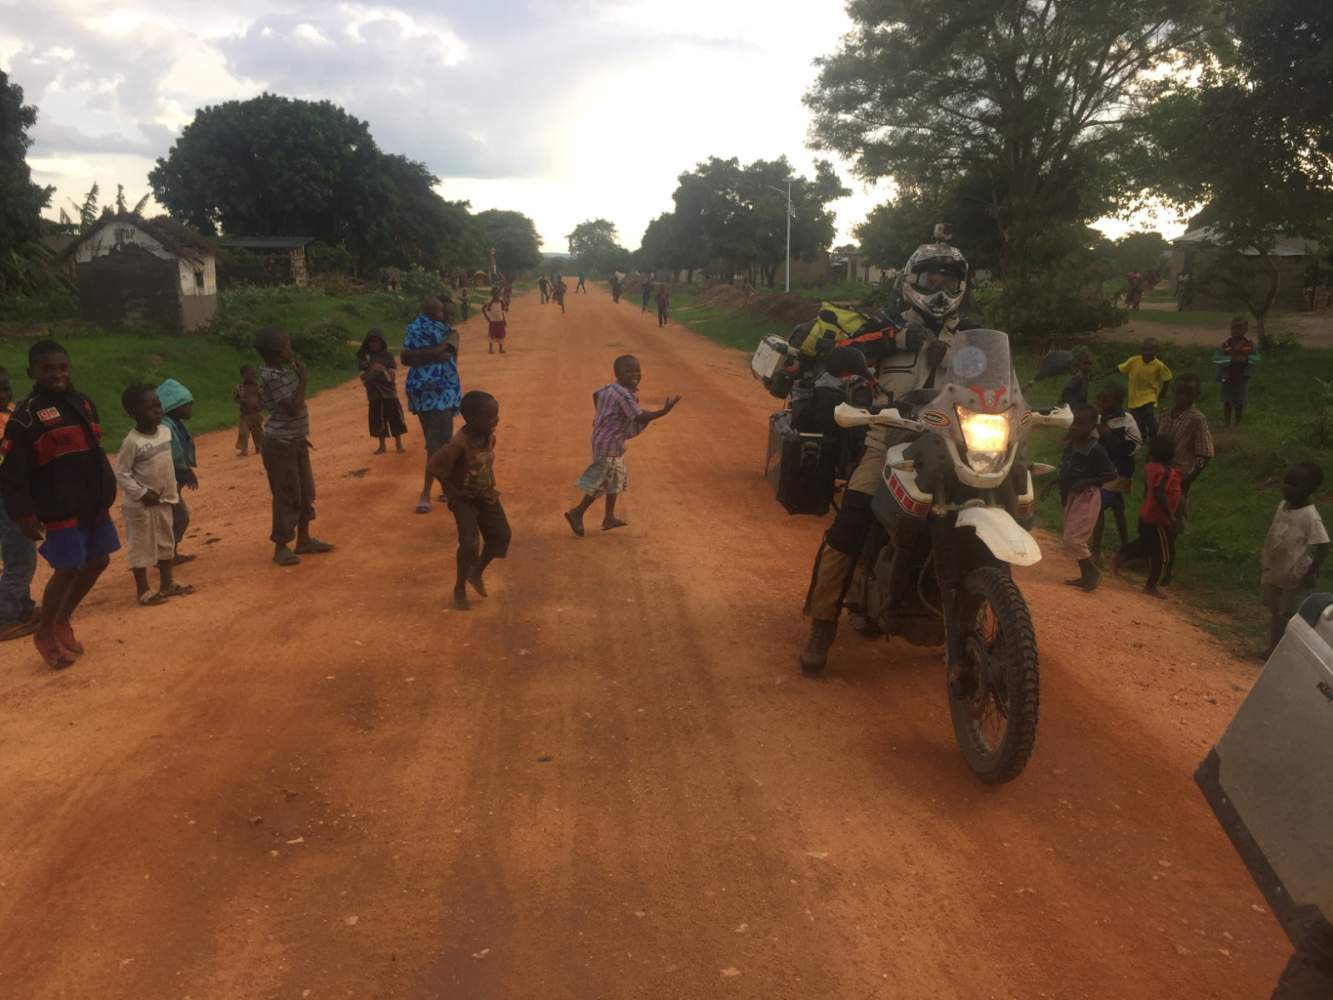 Begeisterte Kinde treffen wir während der Motorradreise durch Afrika